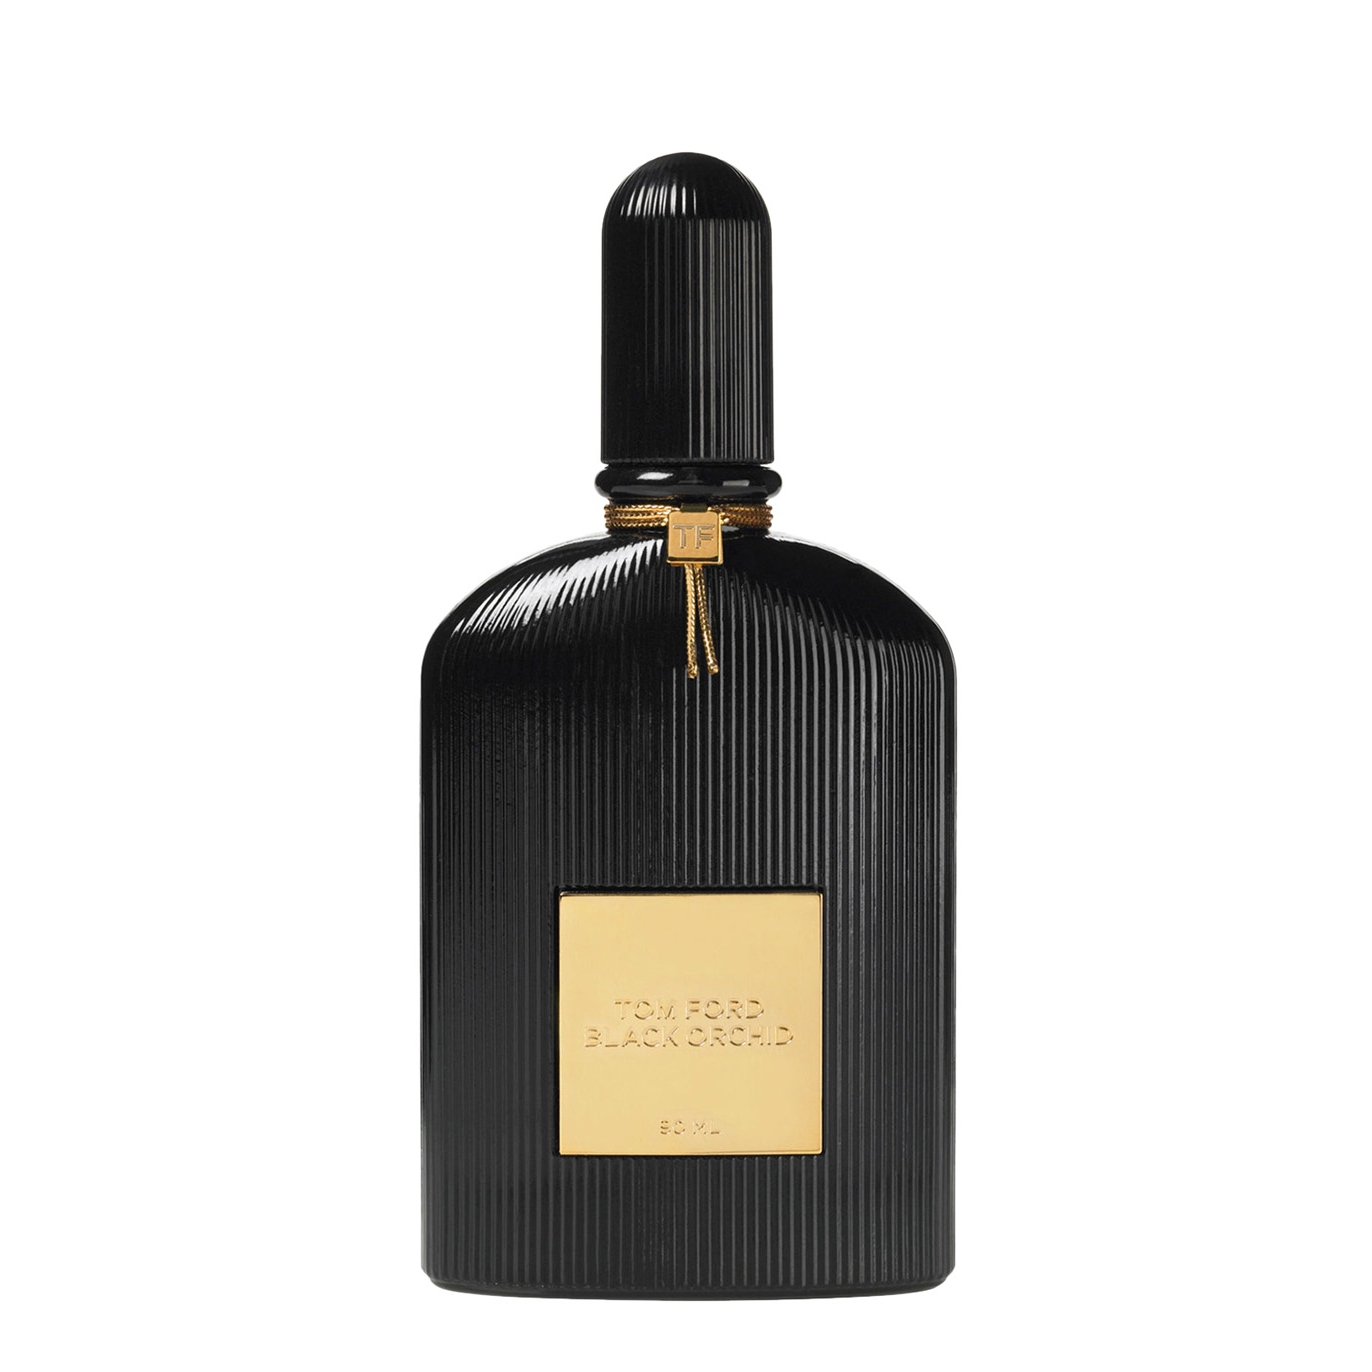 Tom Ford Black Orchid Eau De Parfum 30ml - Harvey Nichols